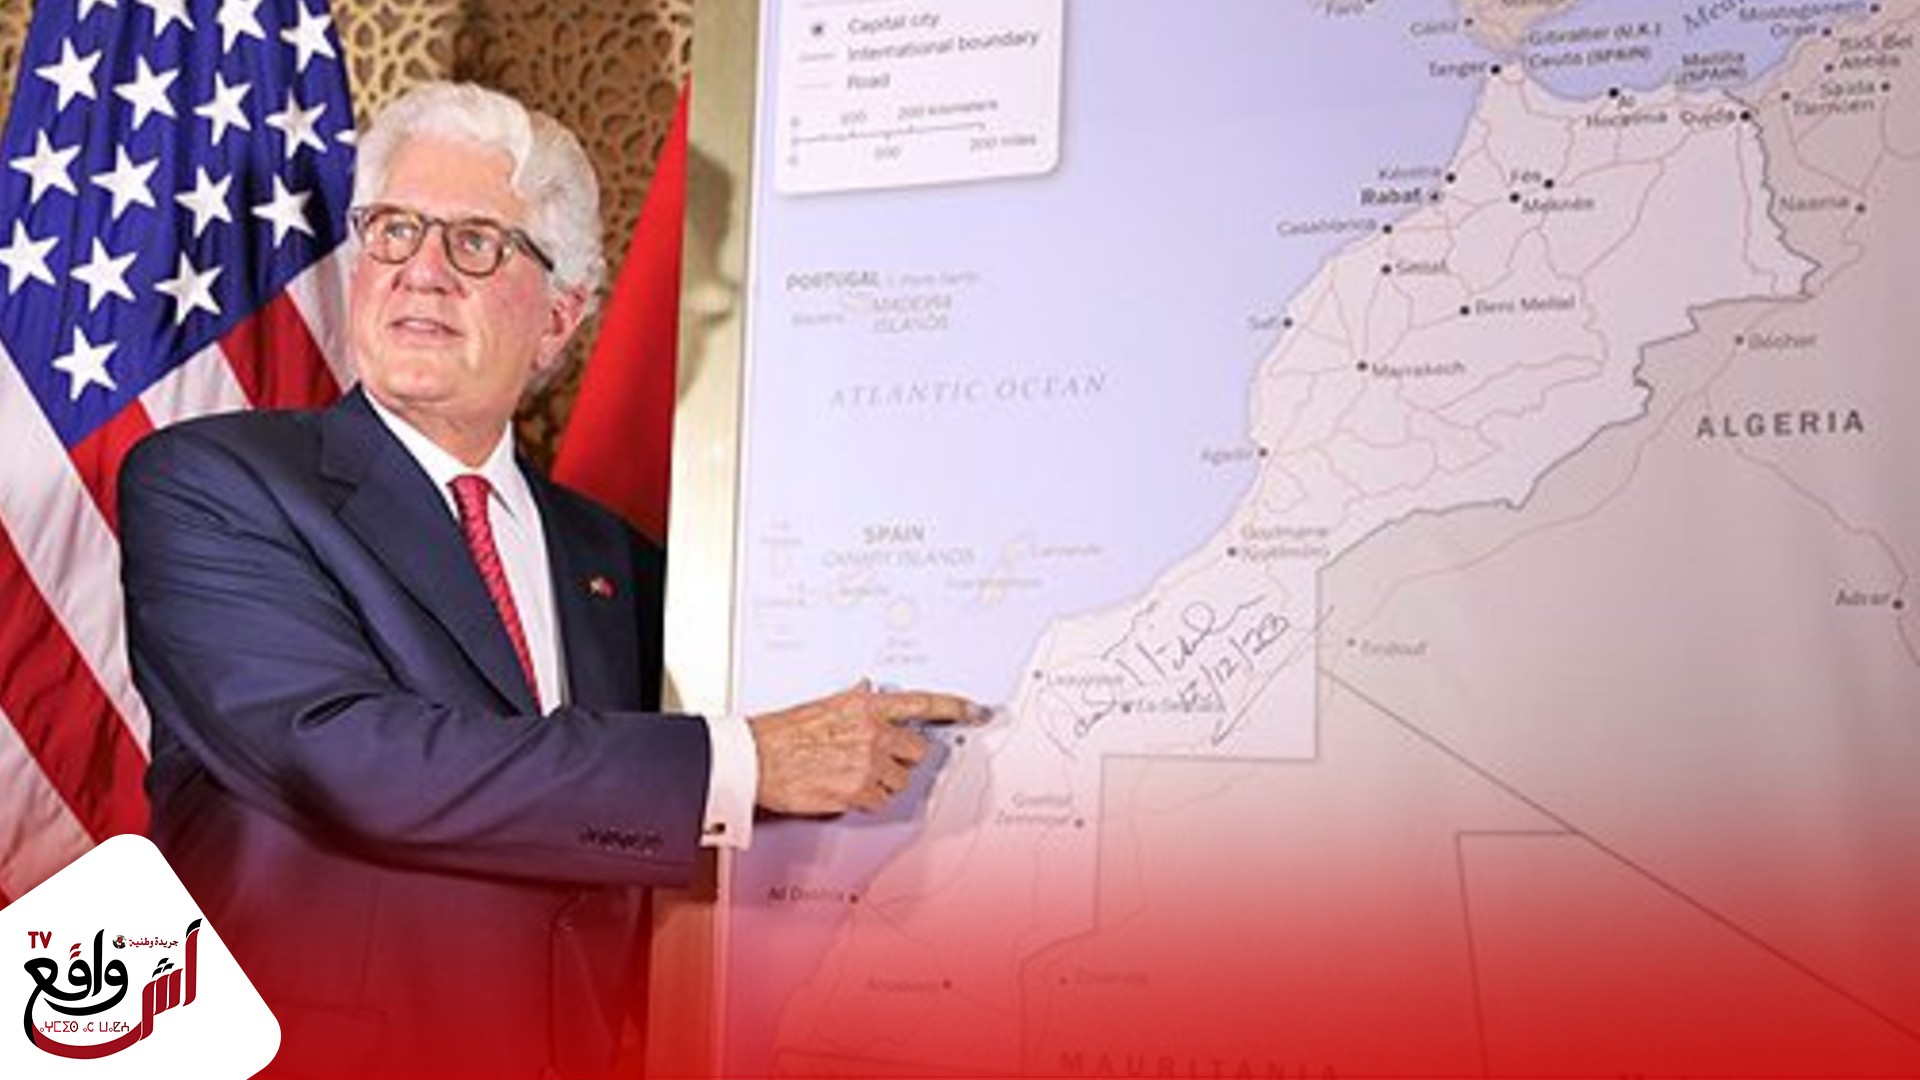 رسميا الحكومة الأمريكية تقدم خريطة المغرب الكاملة